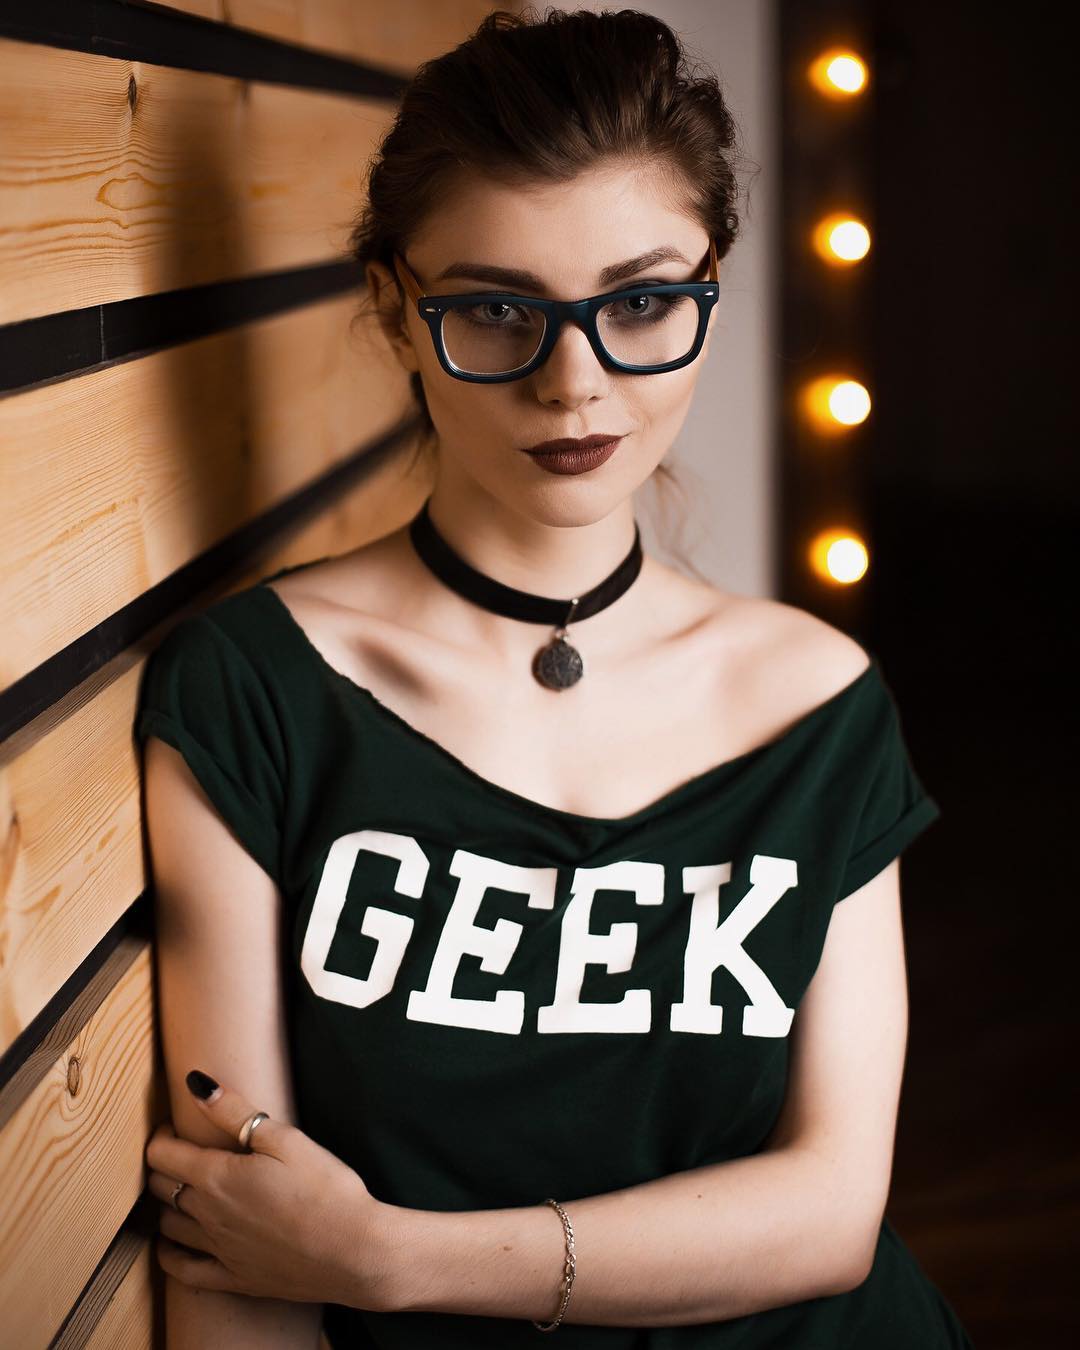 Geek Porn Pics